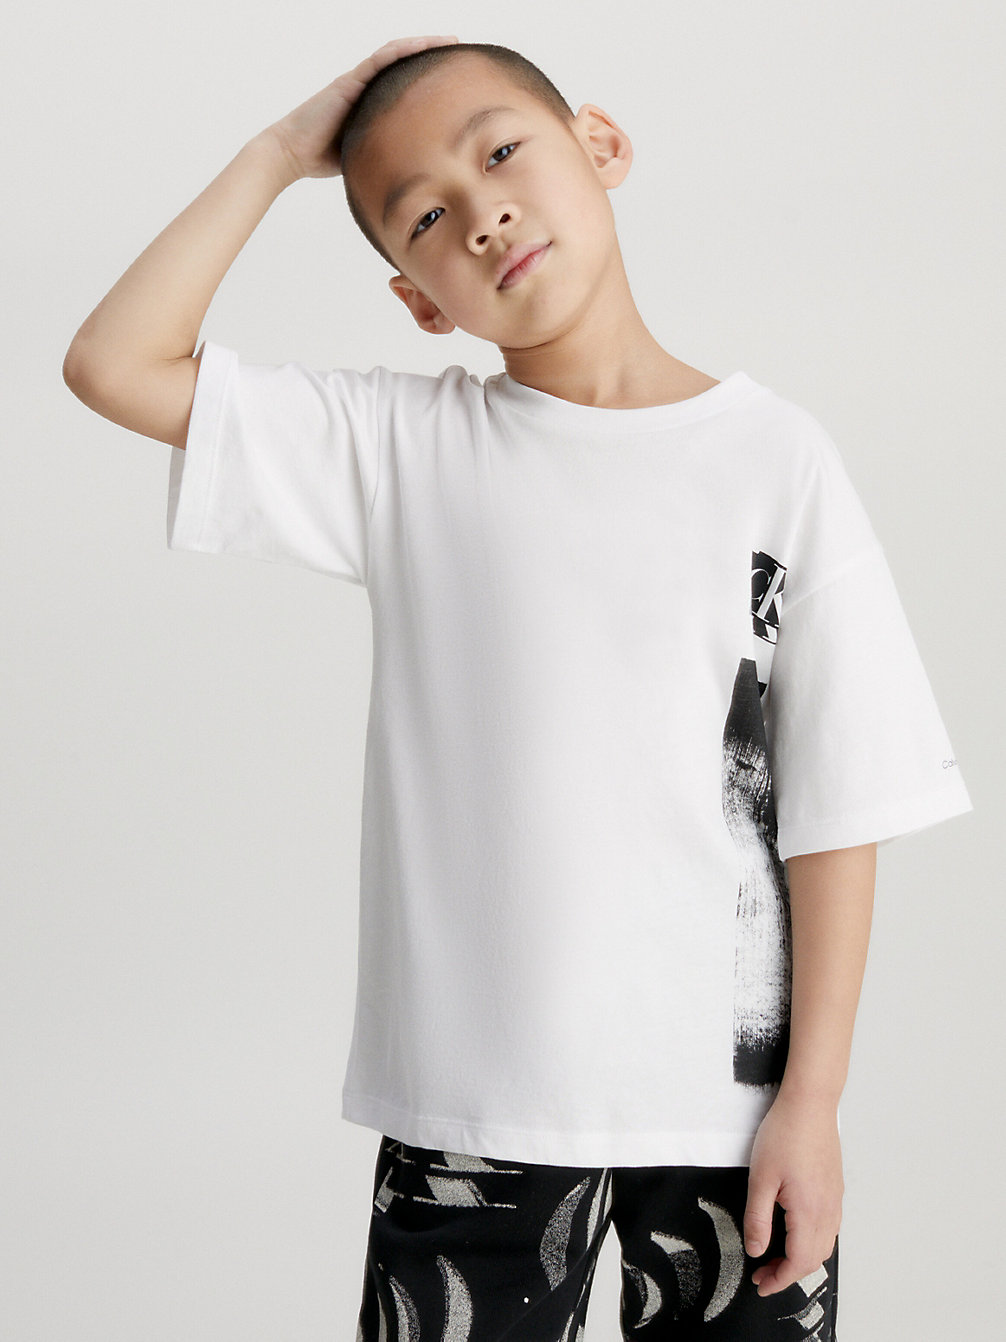 BRIGHT WHITE > Lässiges T-Shirt Mit Grafik In Glitch-Optik > undefined boys - Calvin Klein